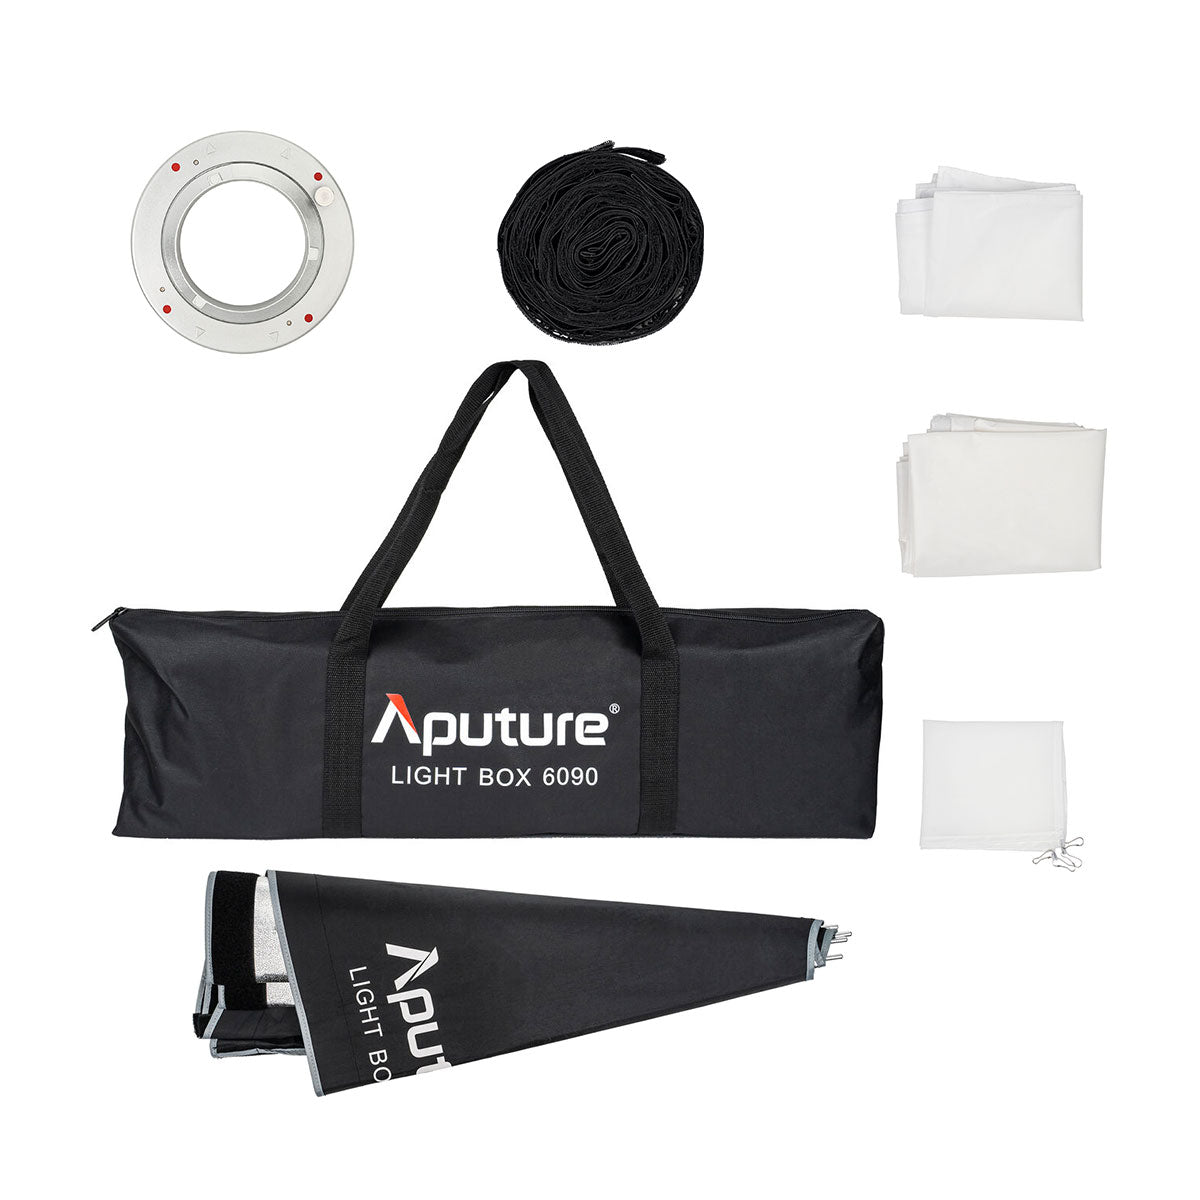 Aputure Light Box 6090 (2 x 3')